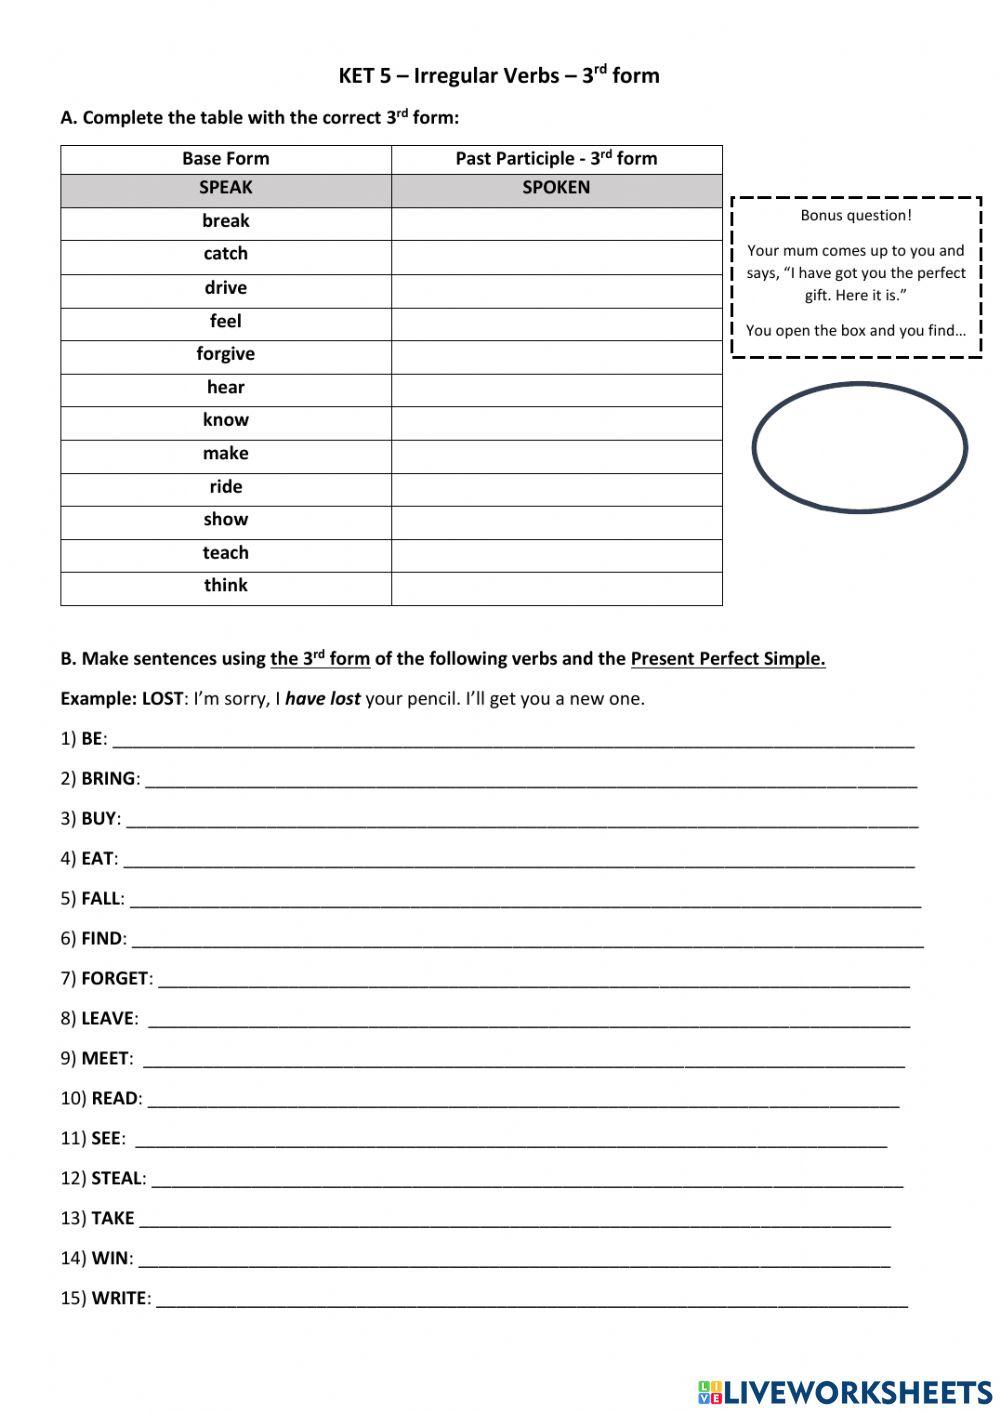 KET 5 - 3rd form - Mini-Test worksheet | Live Worksheets